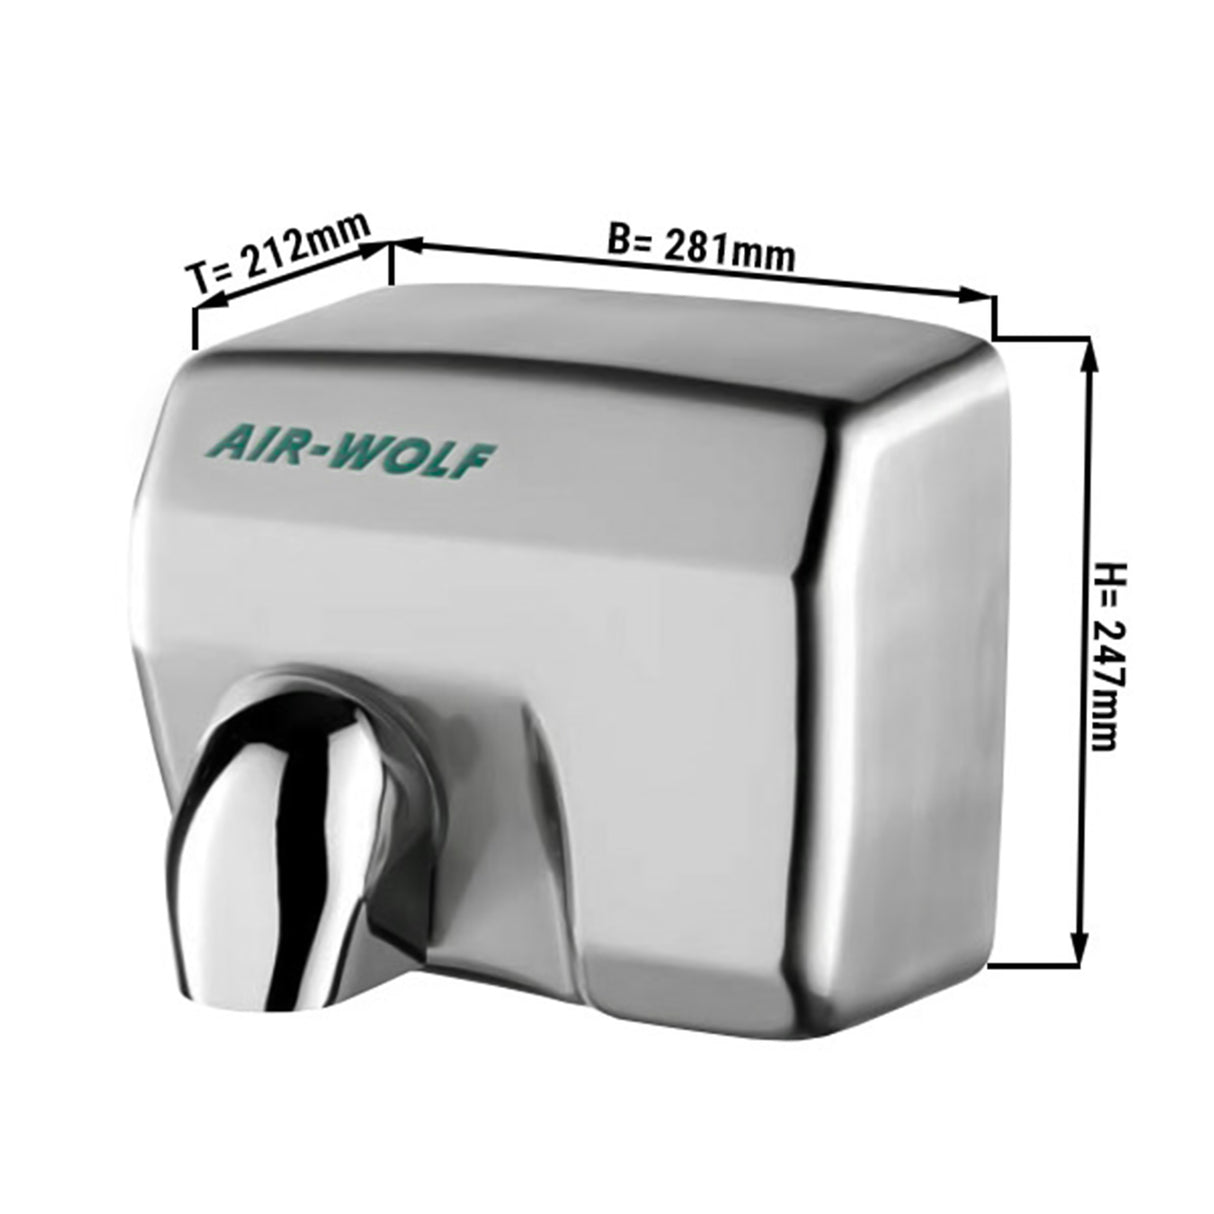 (2 stk) AIR-WOLF - håndtørker - tørketid: 25 sekunder